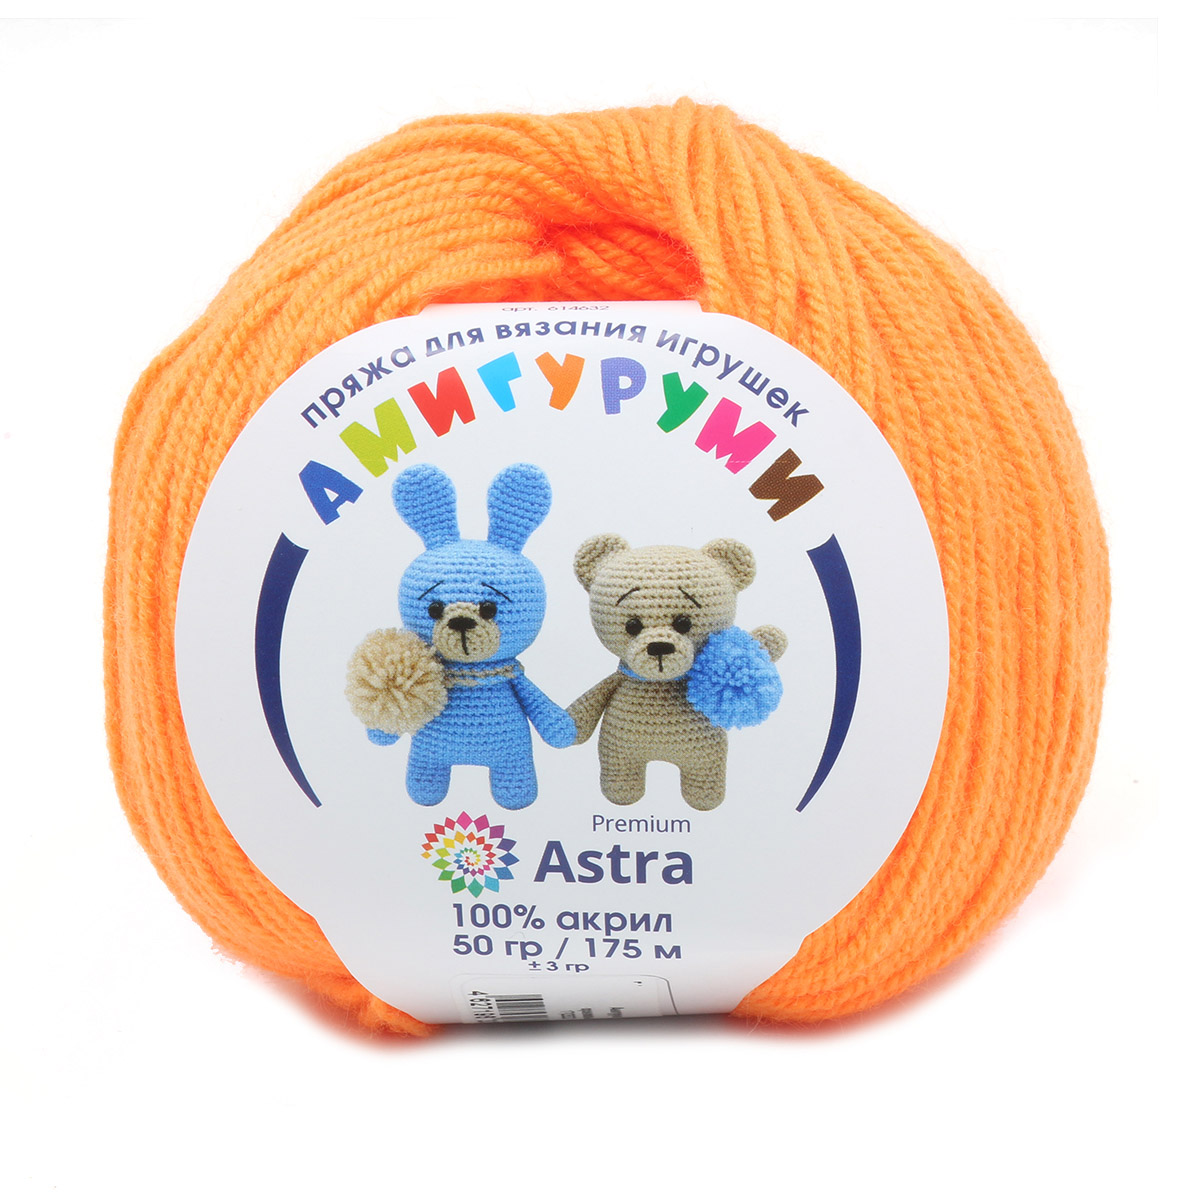 Пряжа для вязания Astra Premium амигуруми акрил для мягких игрушек 50 гр 175 м 035 оранжевый 6 мотков - фото 3